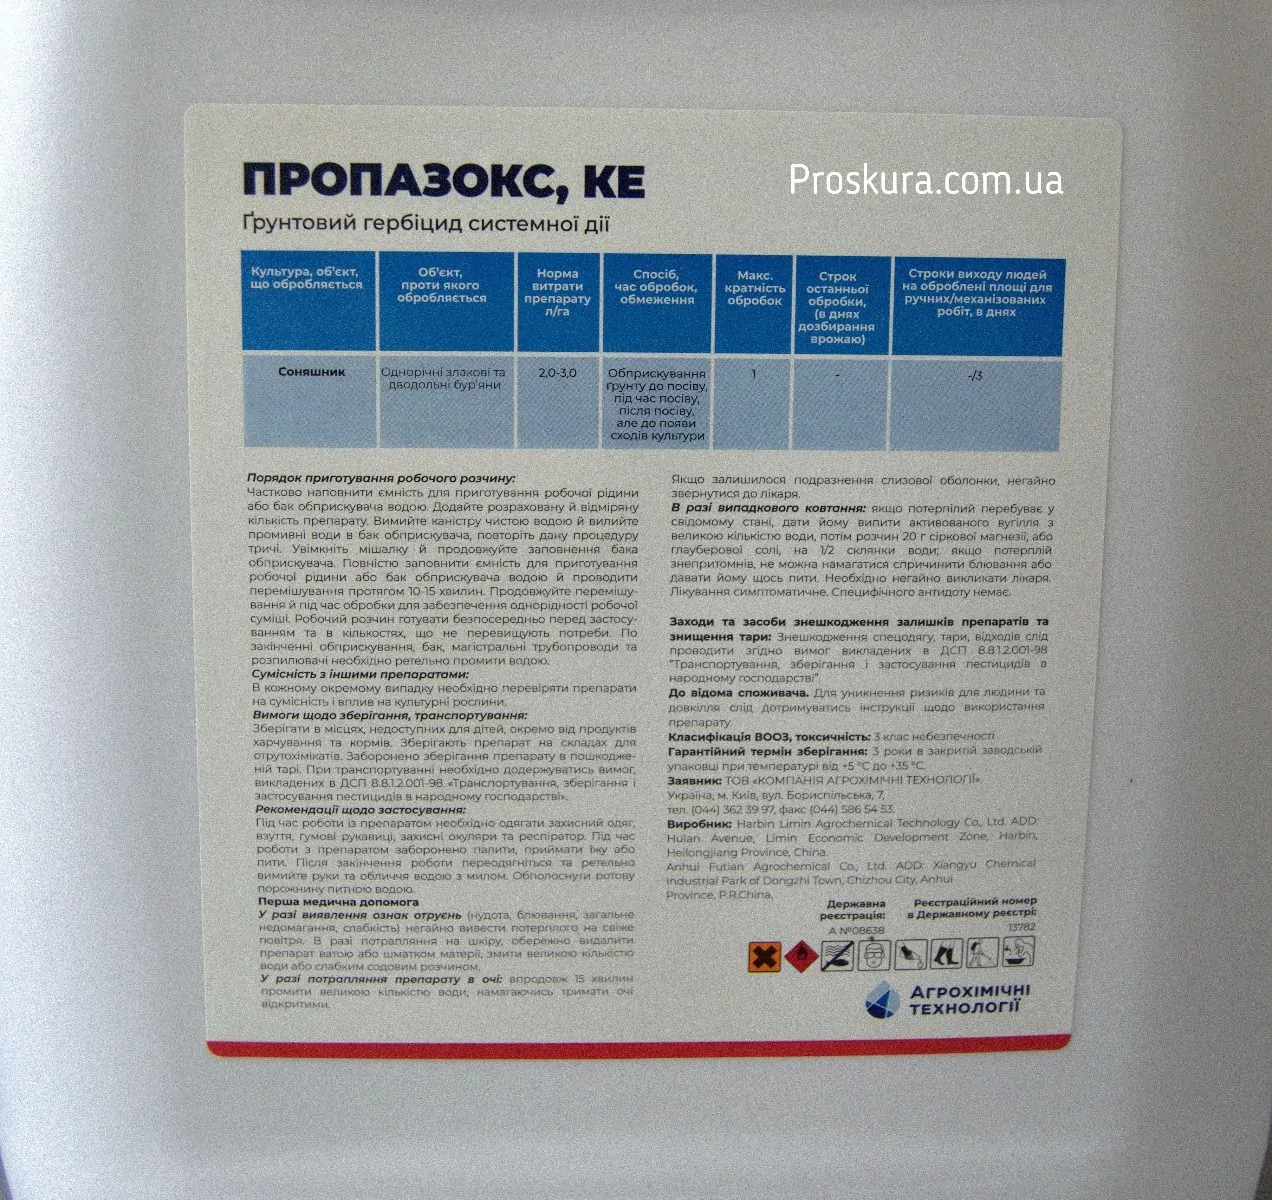 Гербицид Пропазокс